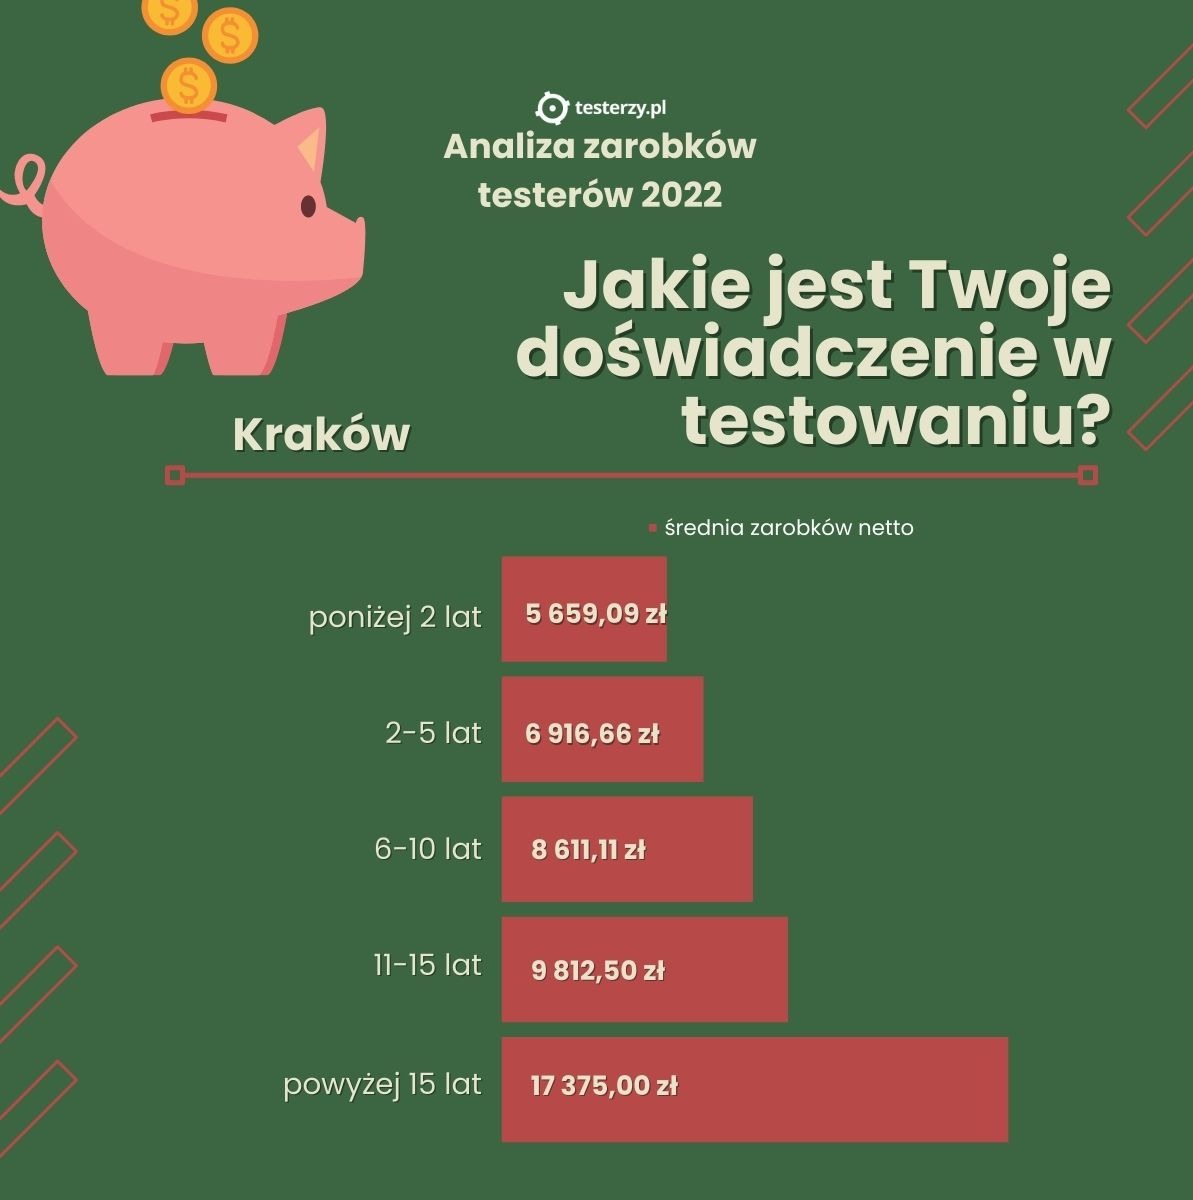 Kraków-doświadczenie-zarobki.jpg